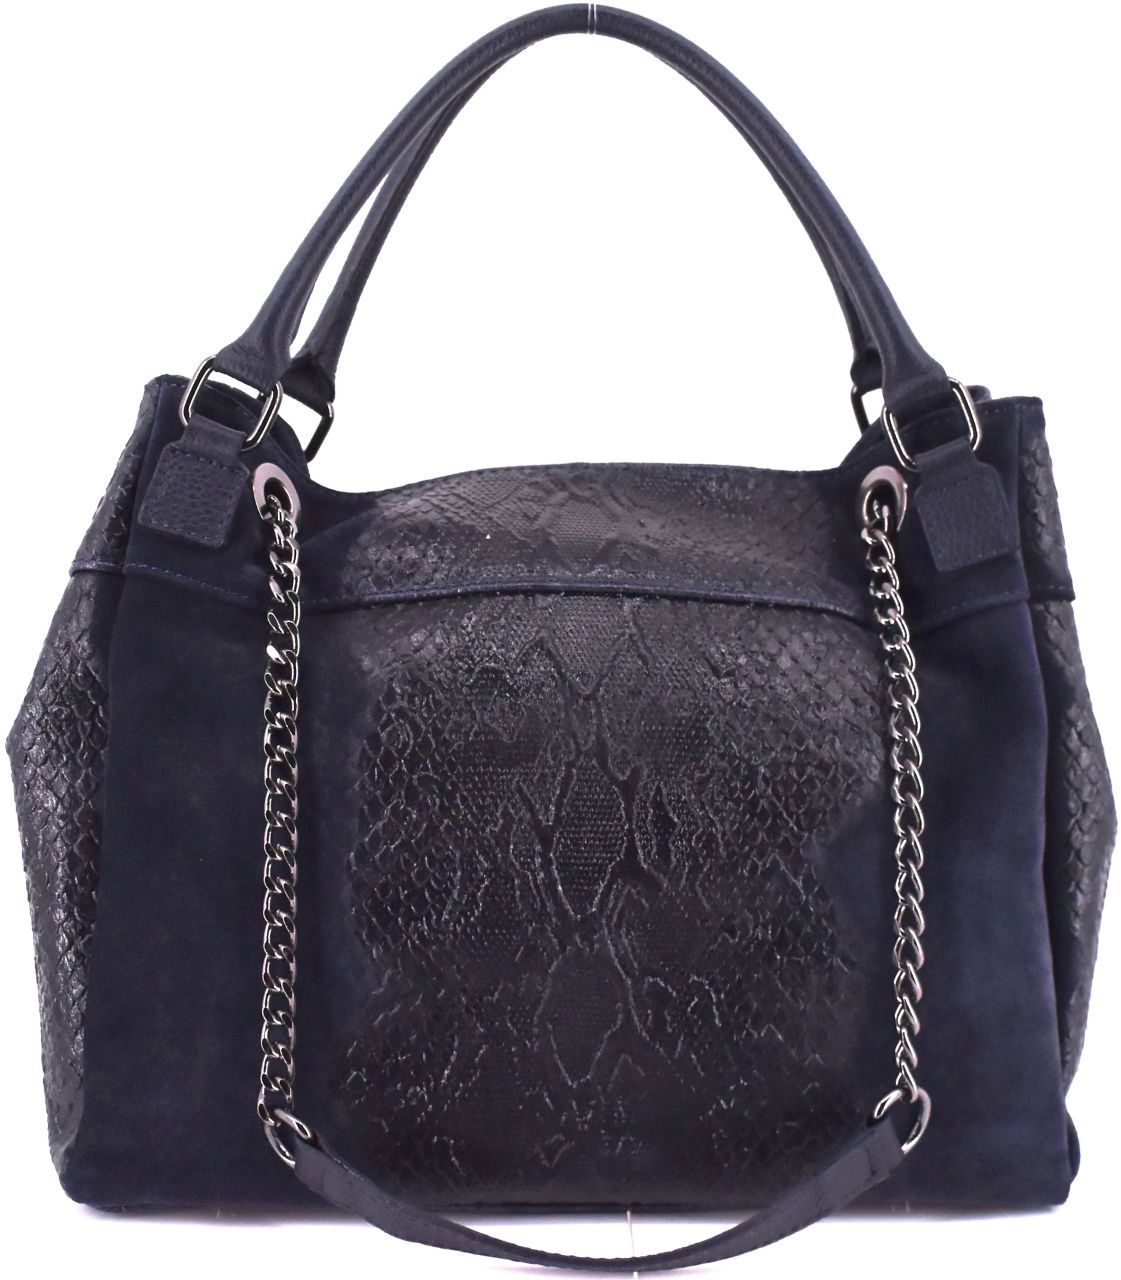 Moderní dámská kožená kabelka Arteddy s hadím vzorem - tmavě modrá